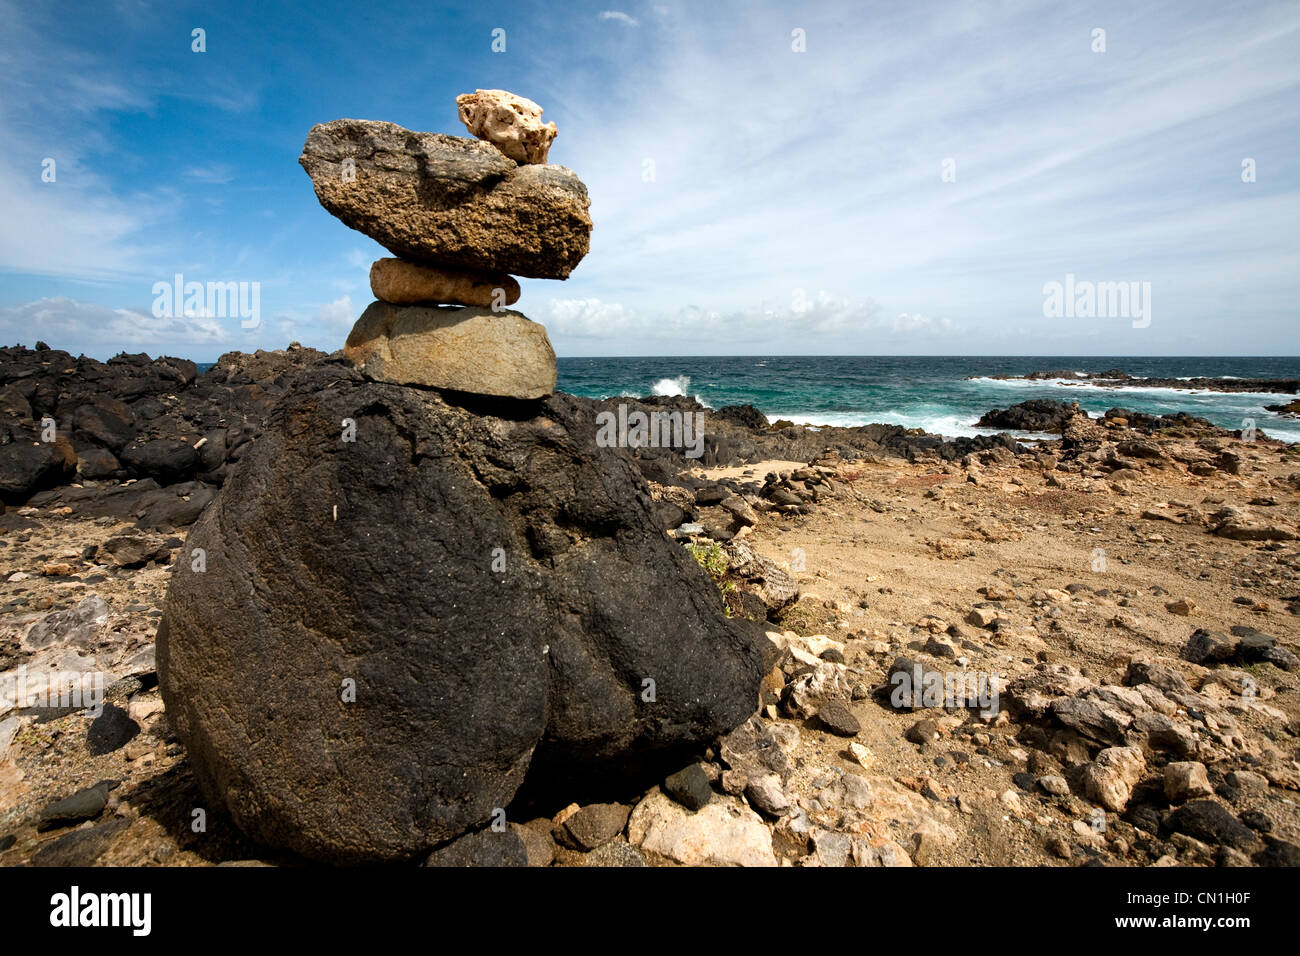 Aruba costa rocce Oceano Mare acqua impilati desiderio che intendono rocce Foto Stock